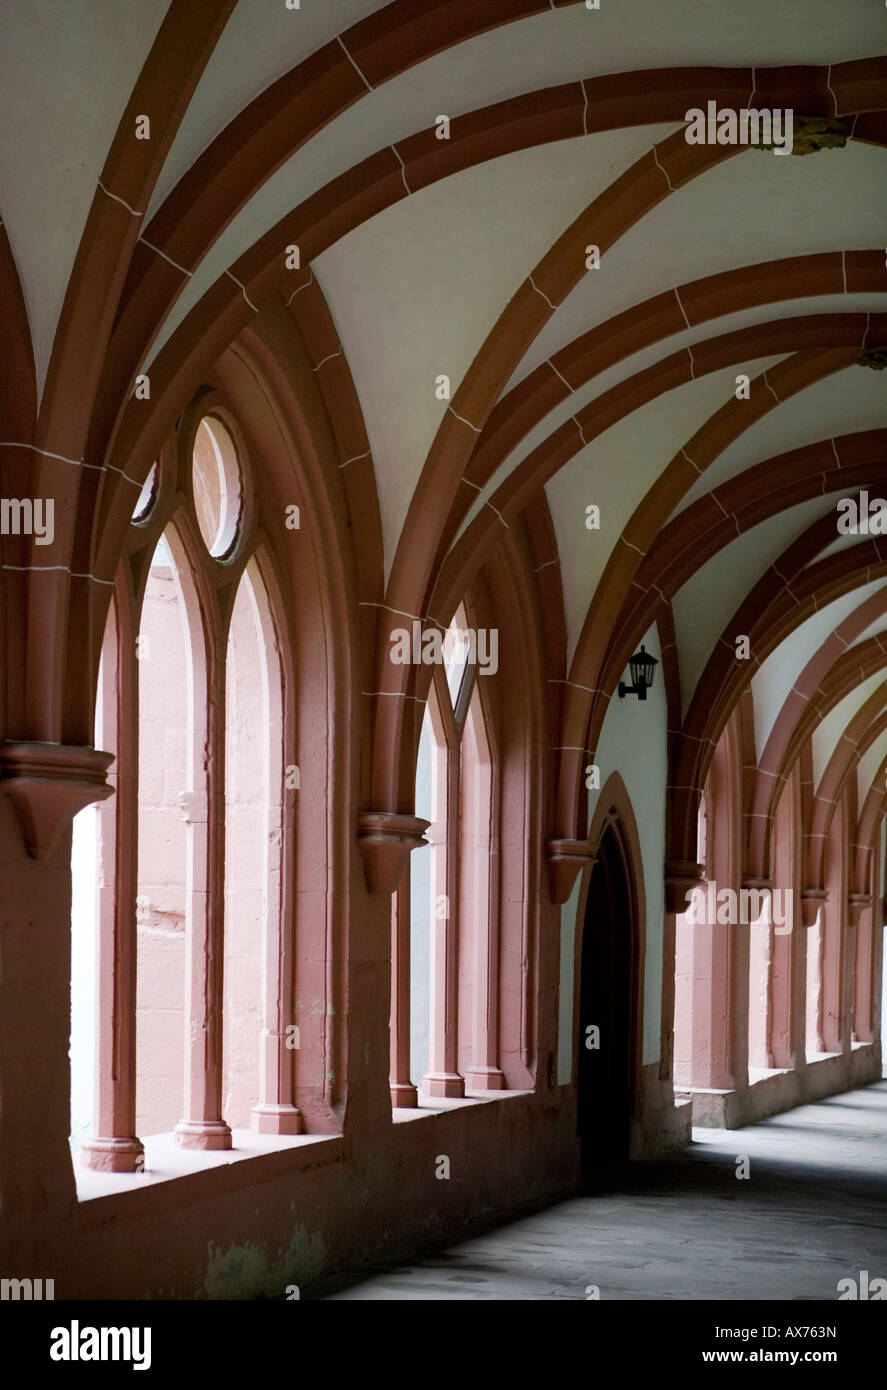 Kloster Eberbach, Deutschland, wurde der Film der Name der Rose gedreht  hier (Innenaufnahmen Stockfotografie - Alamy